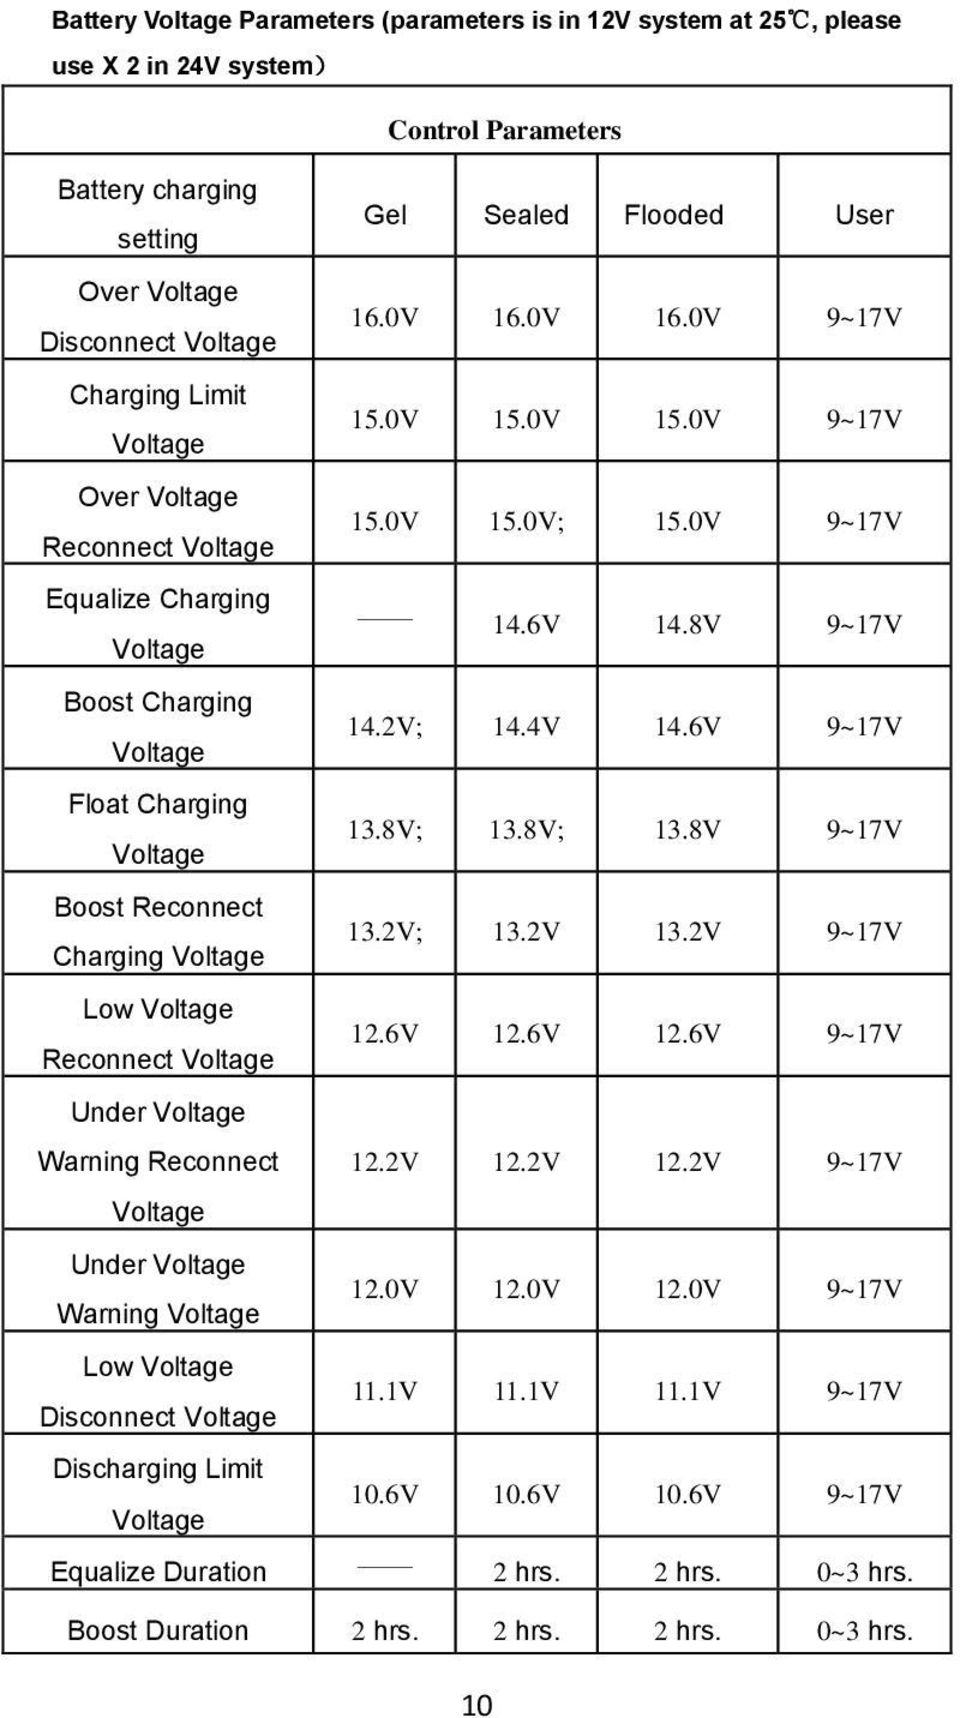 2V; 14.4V 14.6V 9~17V Voltage Float Charging 13.8V; 13.8V; 13.8V 9~17V Voltage Boost Reconnect 13.2V; 13.2V 13.2V 9~17V Charging Voltage Low Voltage 12.6V 12.